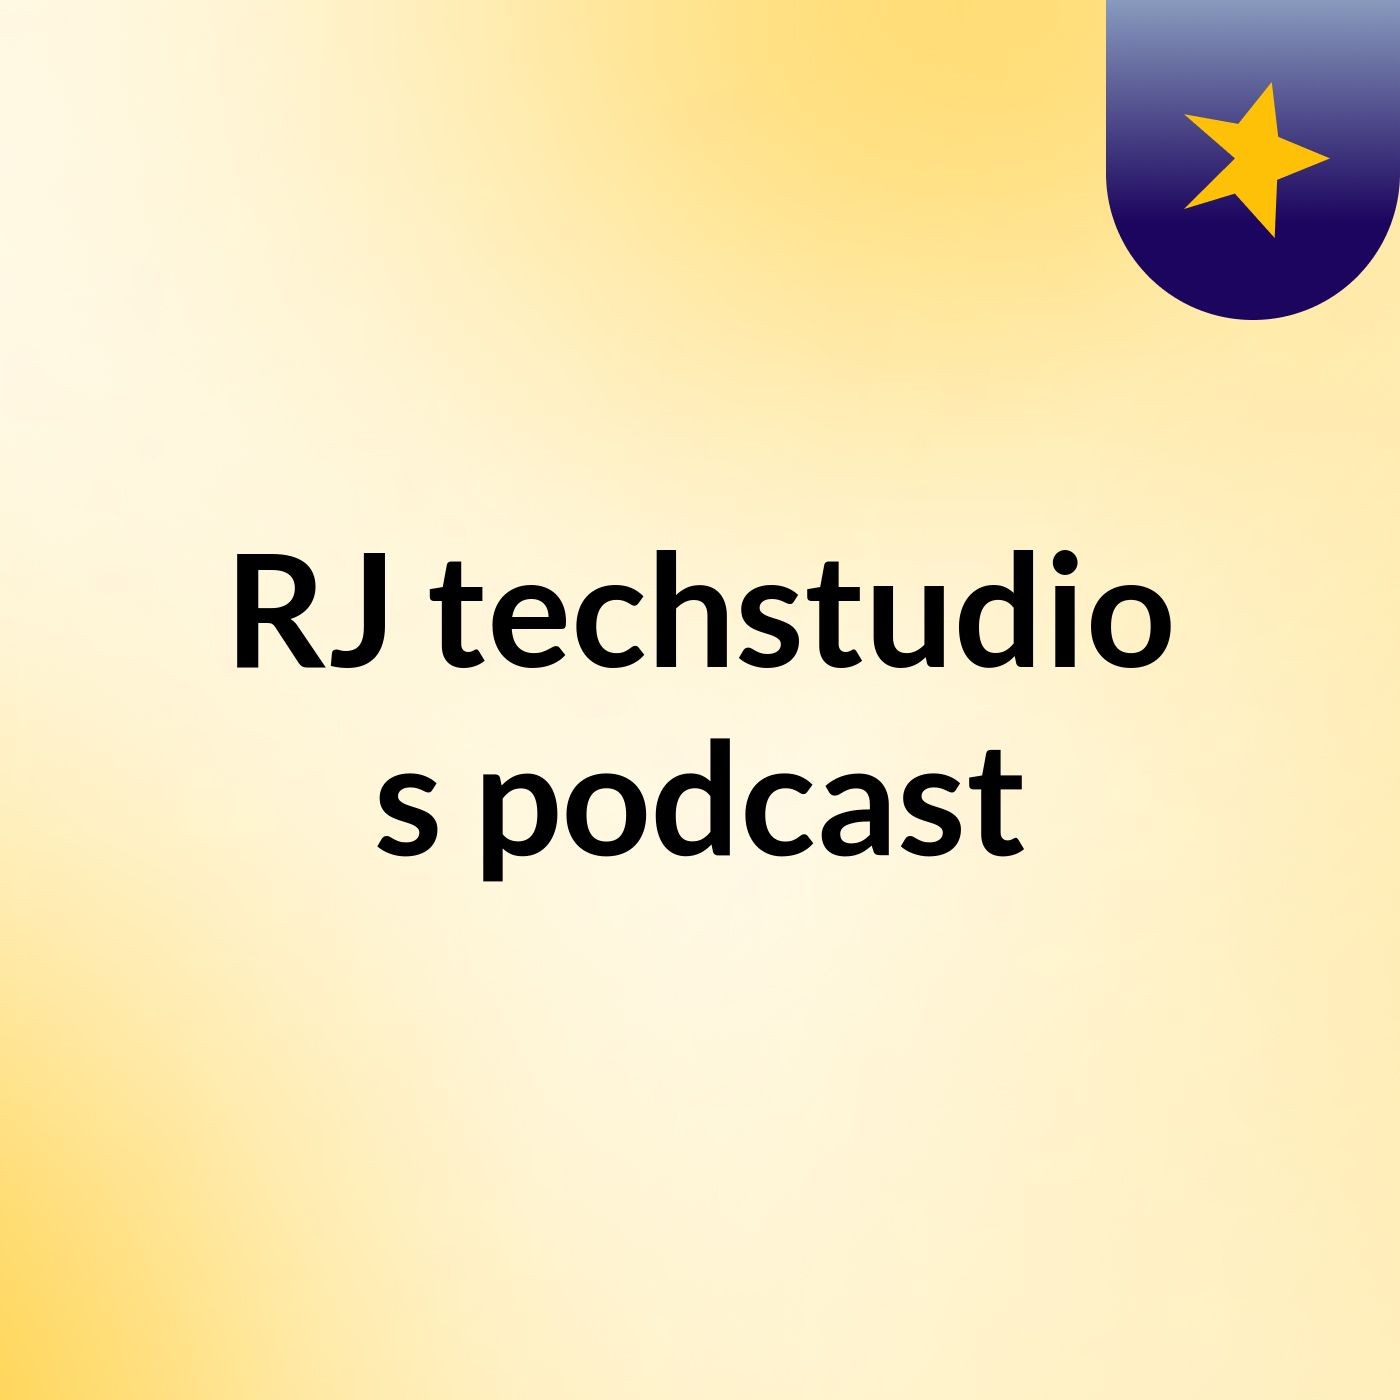 RJ techstudio's podcast